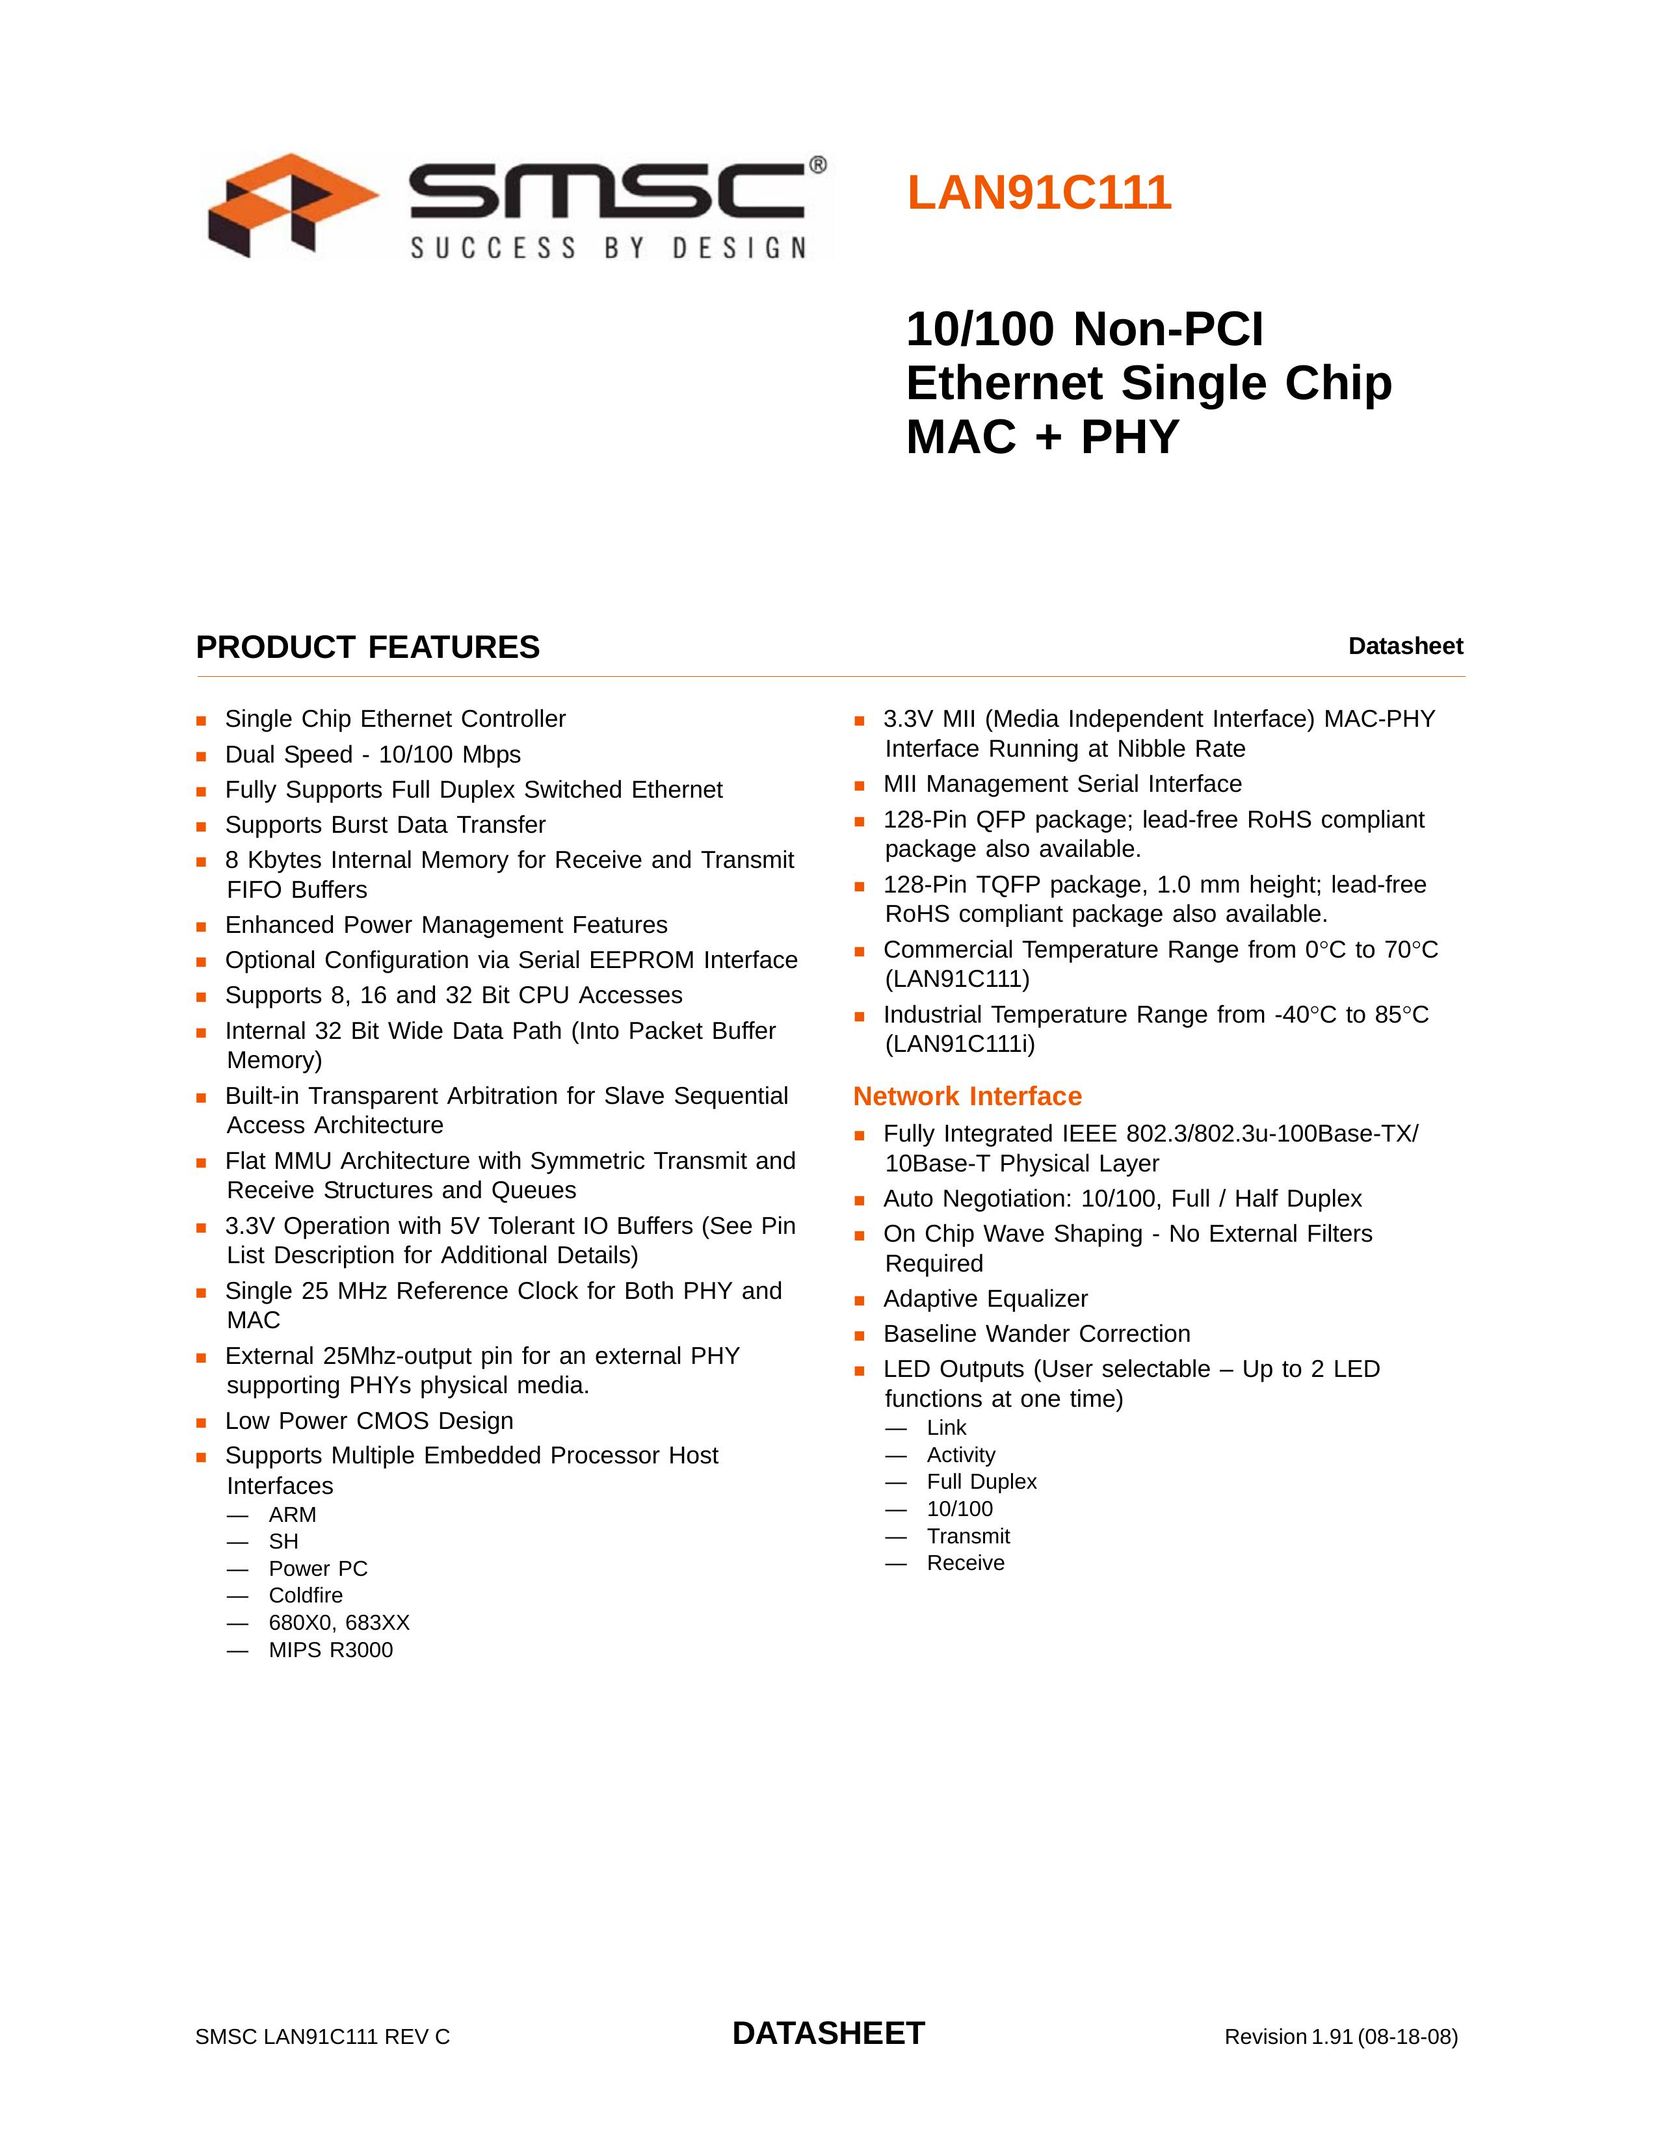 SMSC LAN91C111 Network Card User Manual